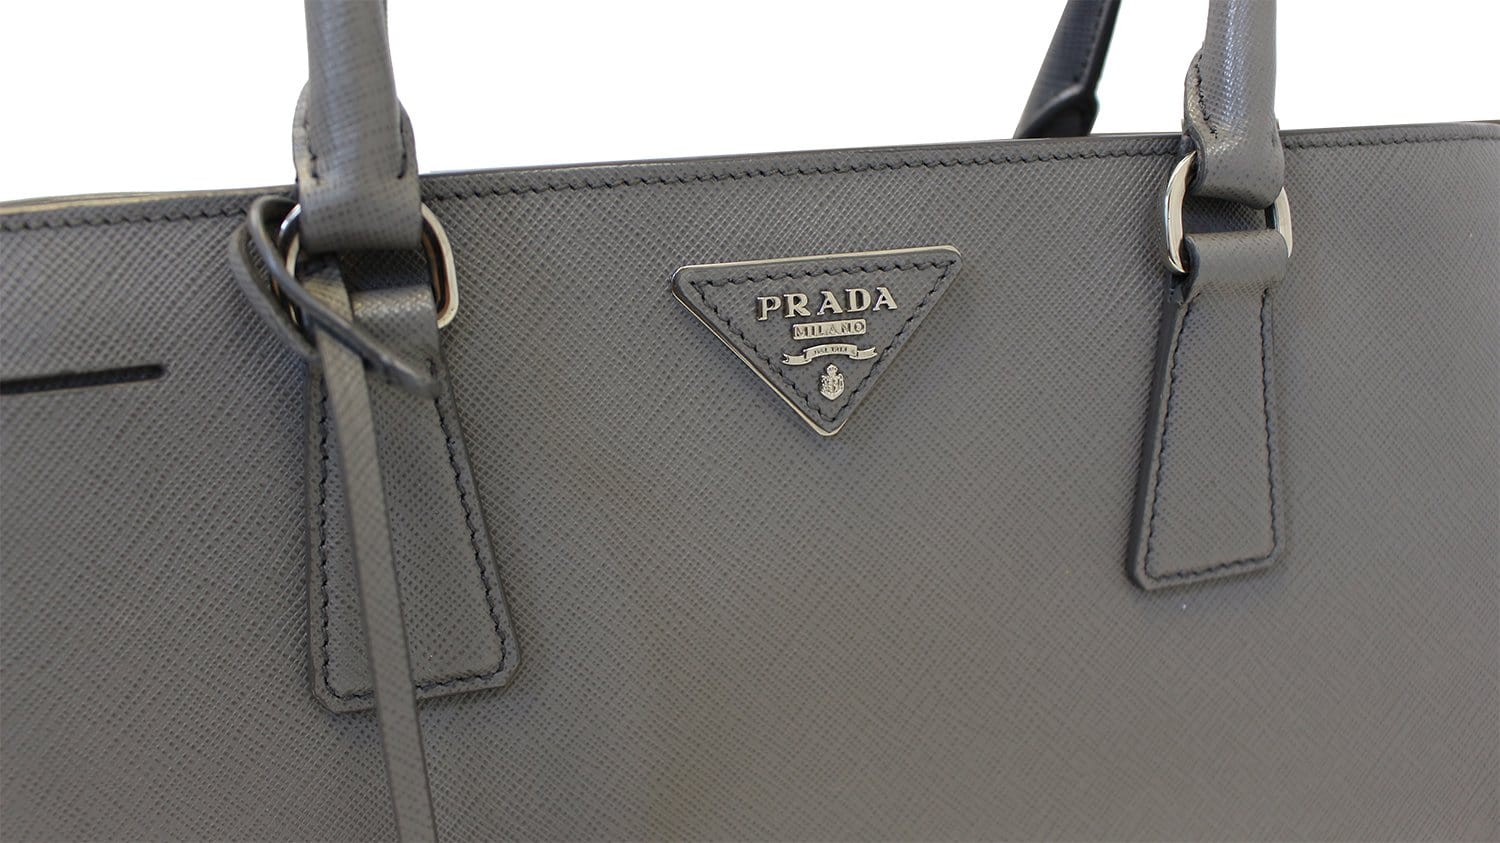 Slate Gray Prada Monochrome Medium Saffiano Bag